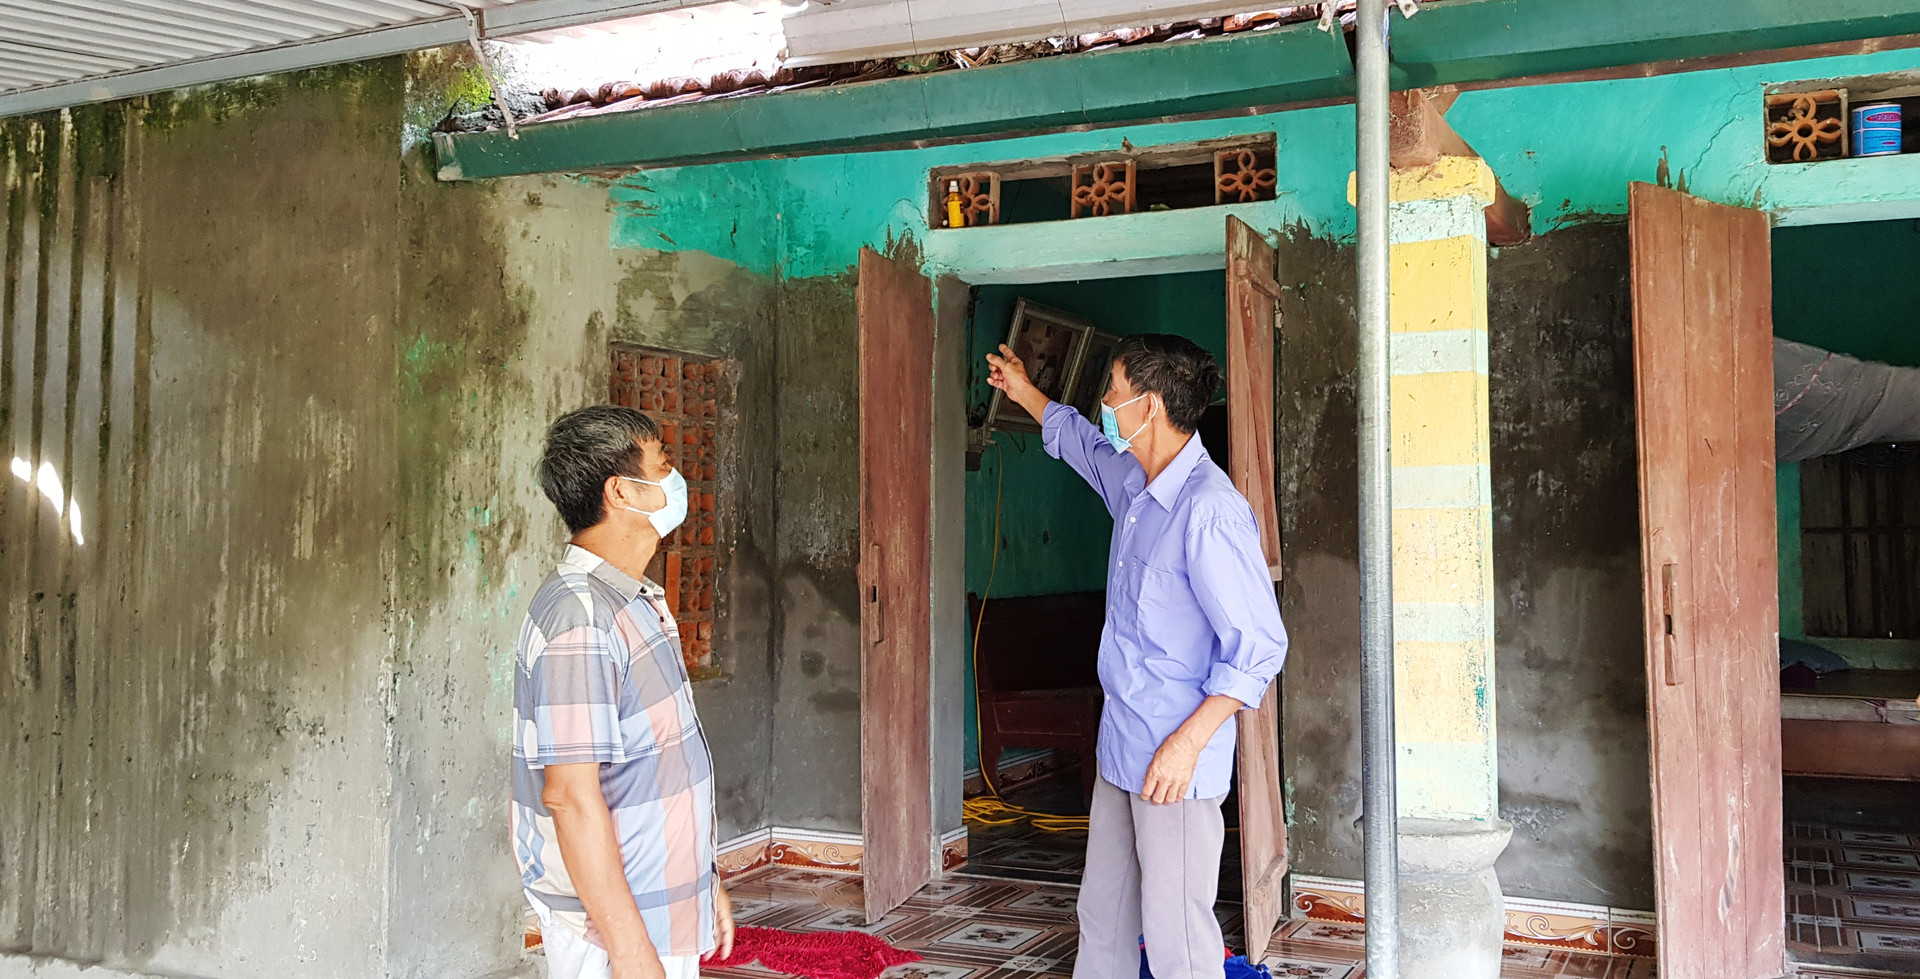 Ông Trần Văn Hợp (bên trái) bức xúc trước căn nhà cấp 4 cũ nát của mình mà không được sửa chữa.